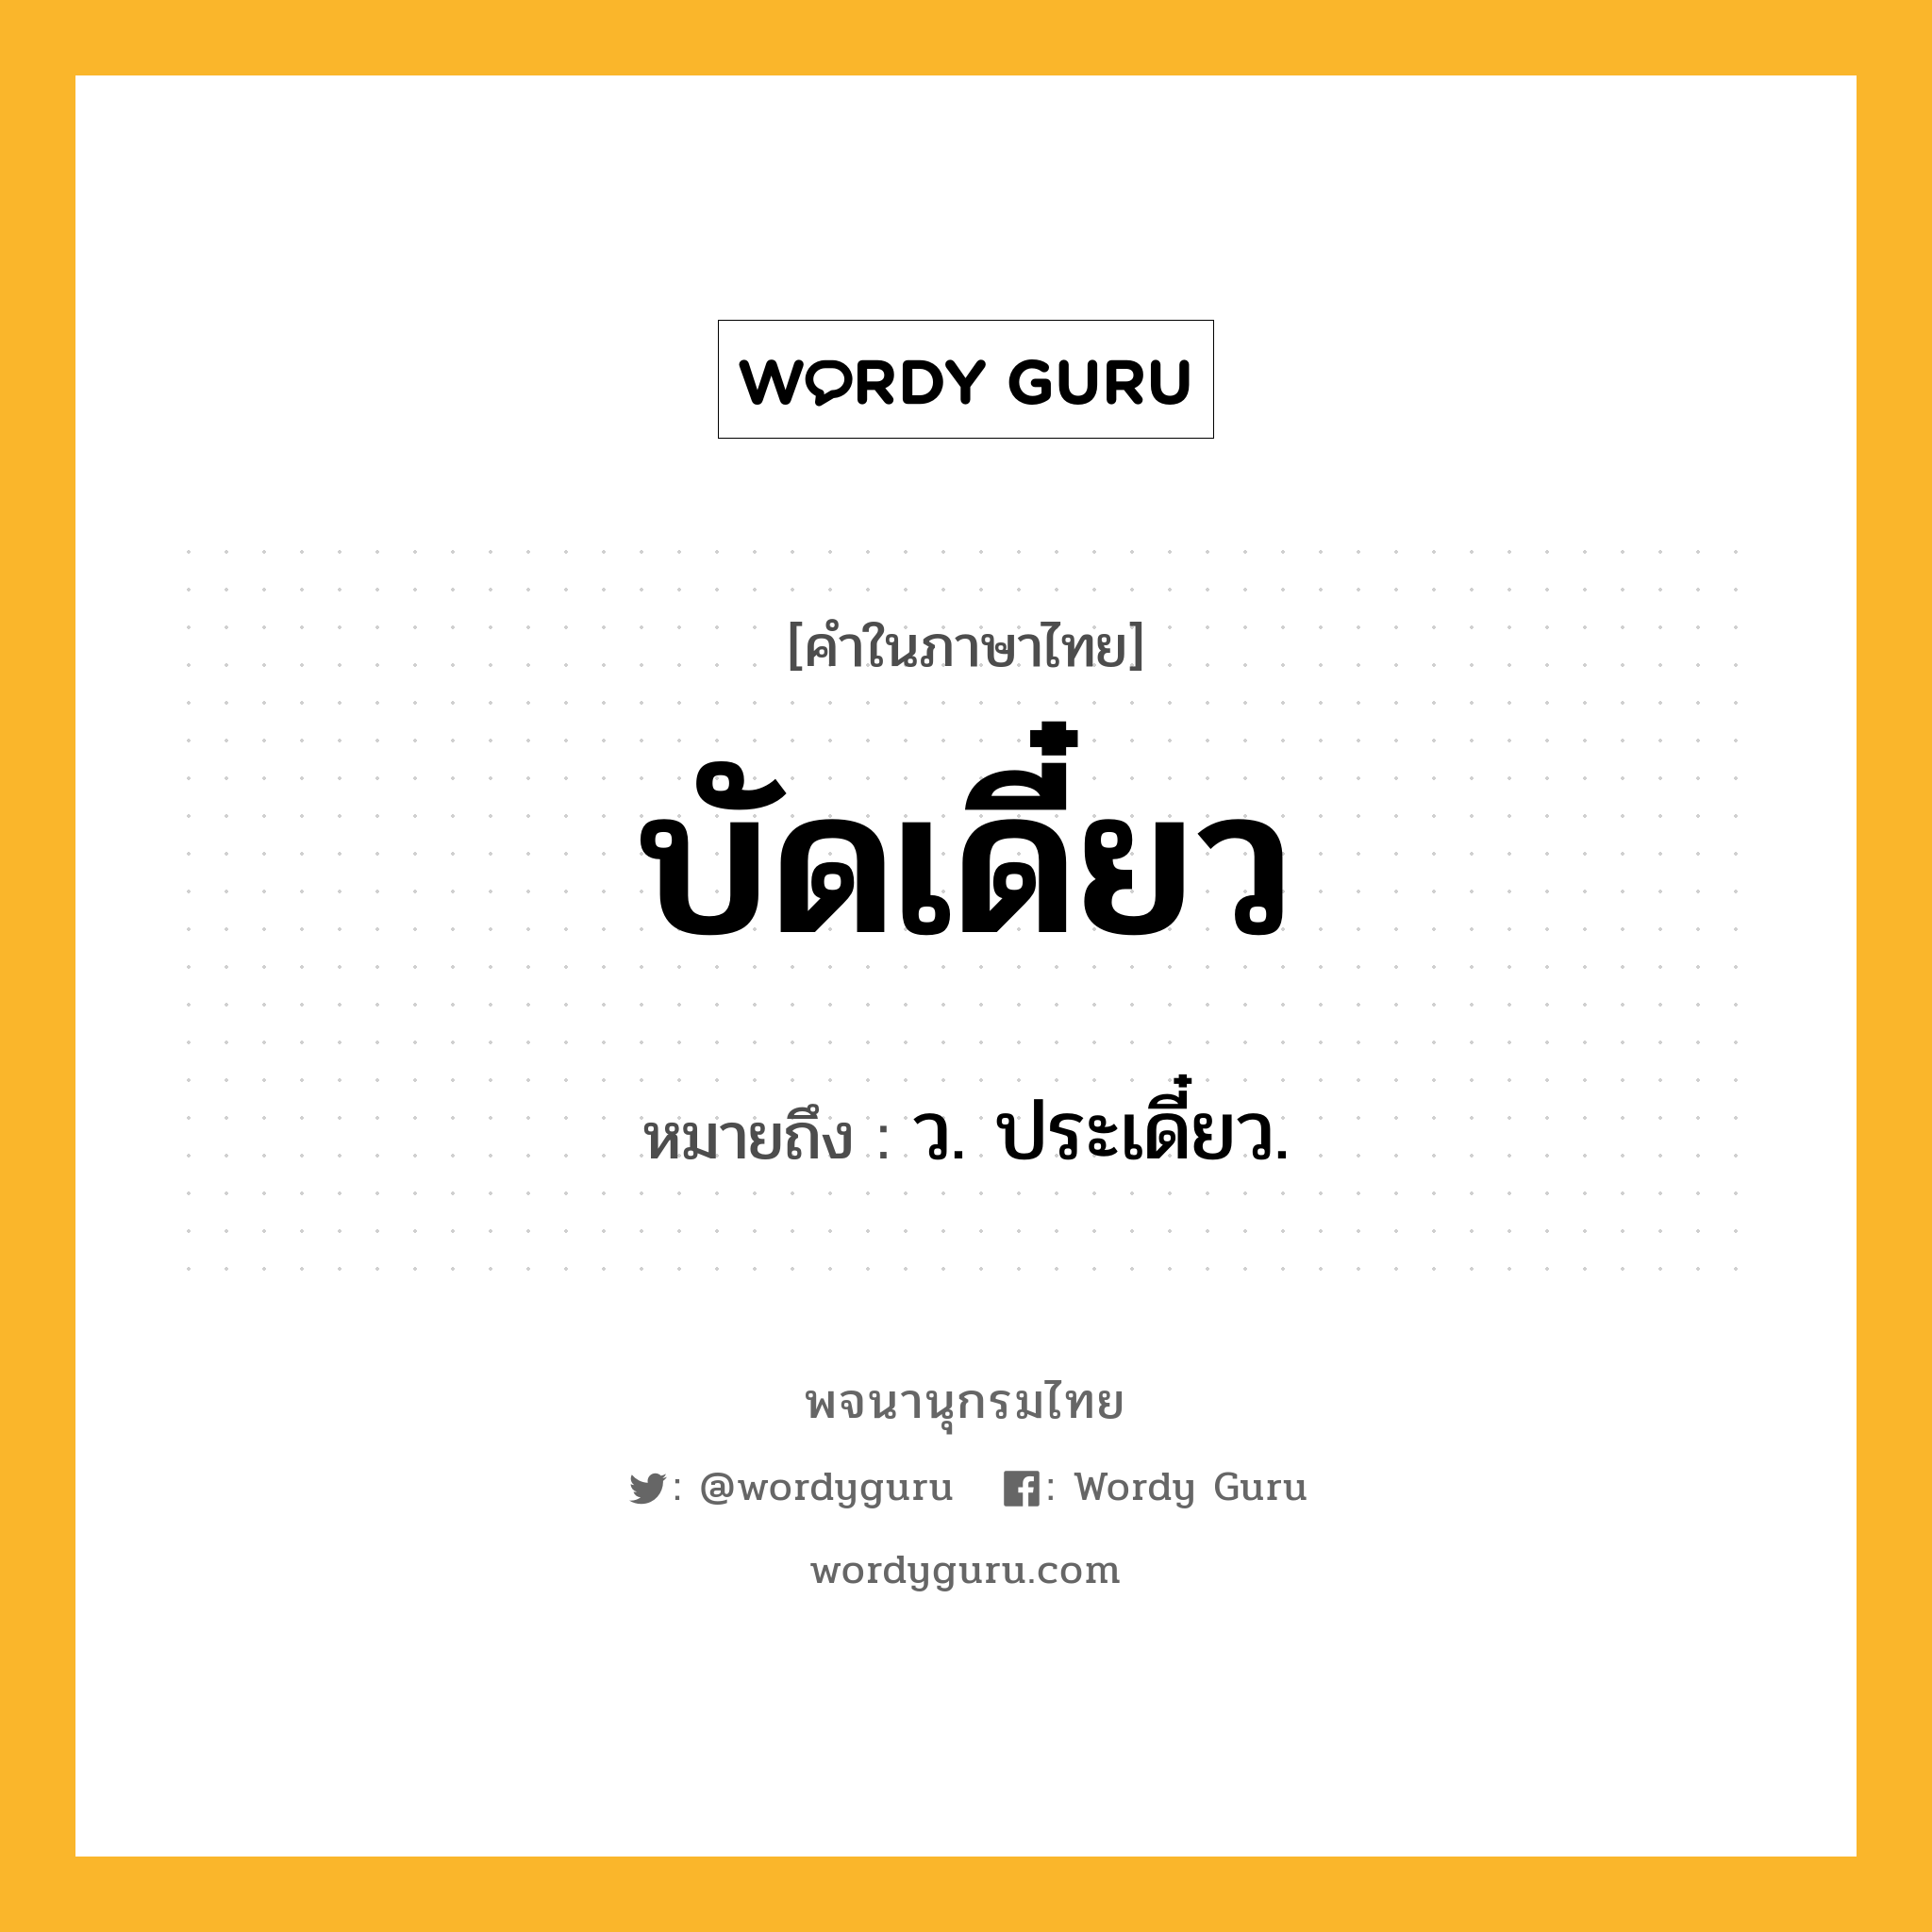 บัดเดี๋ยว หมายถึงอะไร?, คำในภาษาไทย บัดเดี๋ยว หมายถึง ว. ประเดี๋ยว.